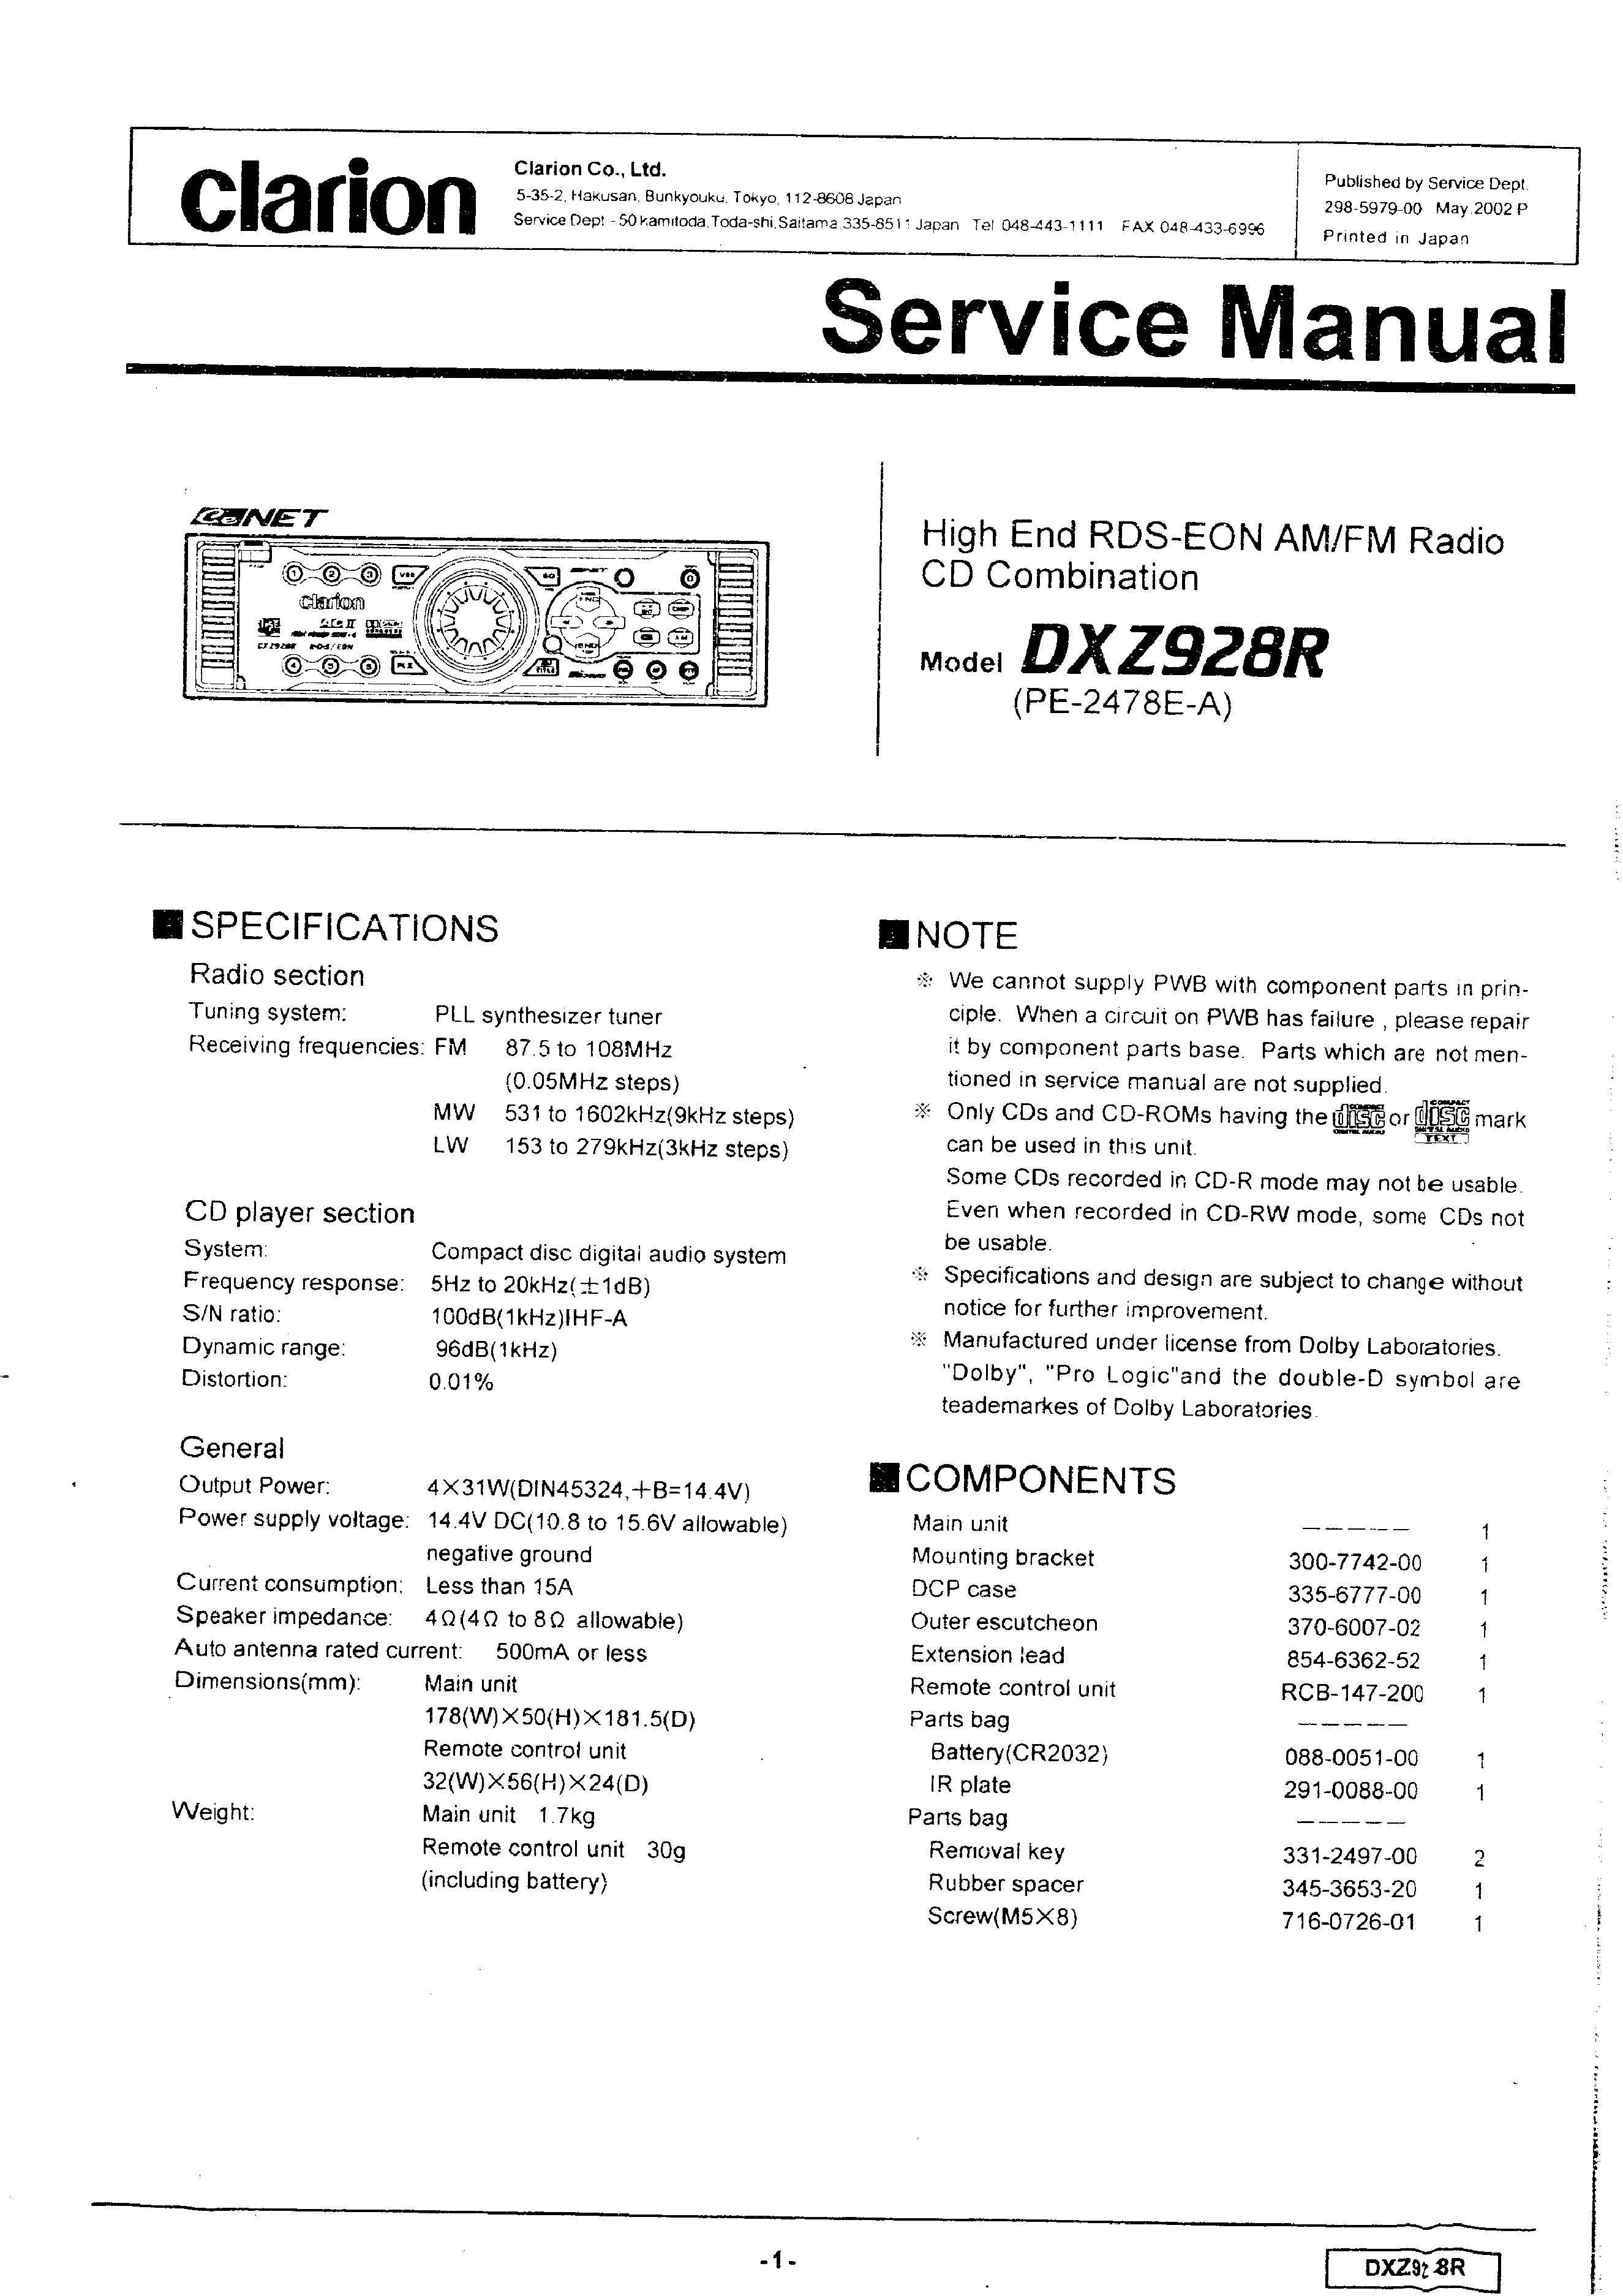 Clarion dxz928r инструкция